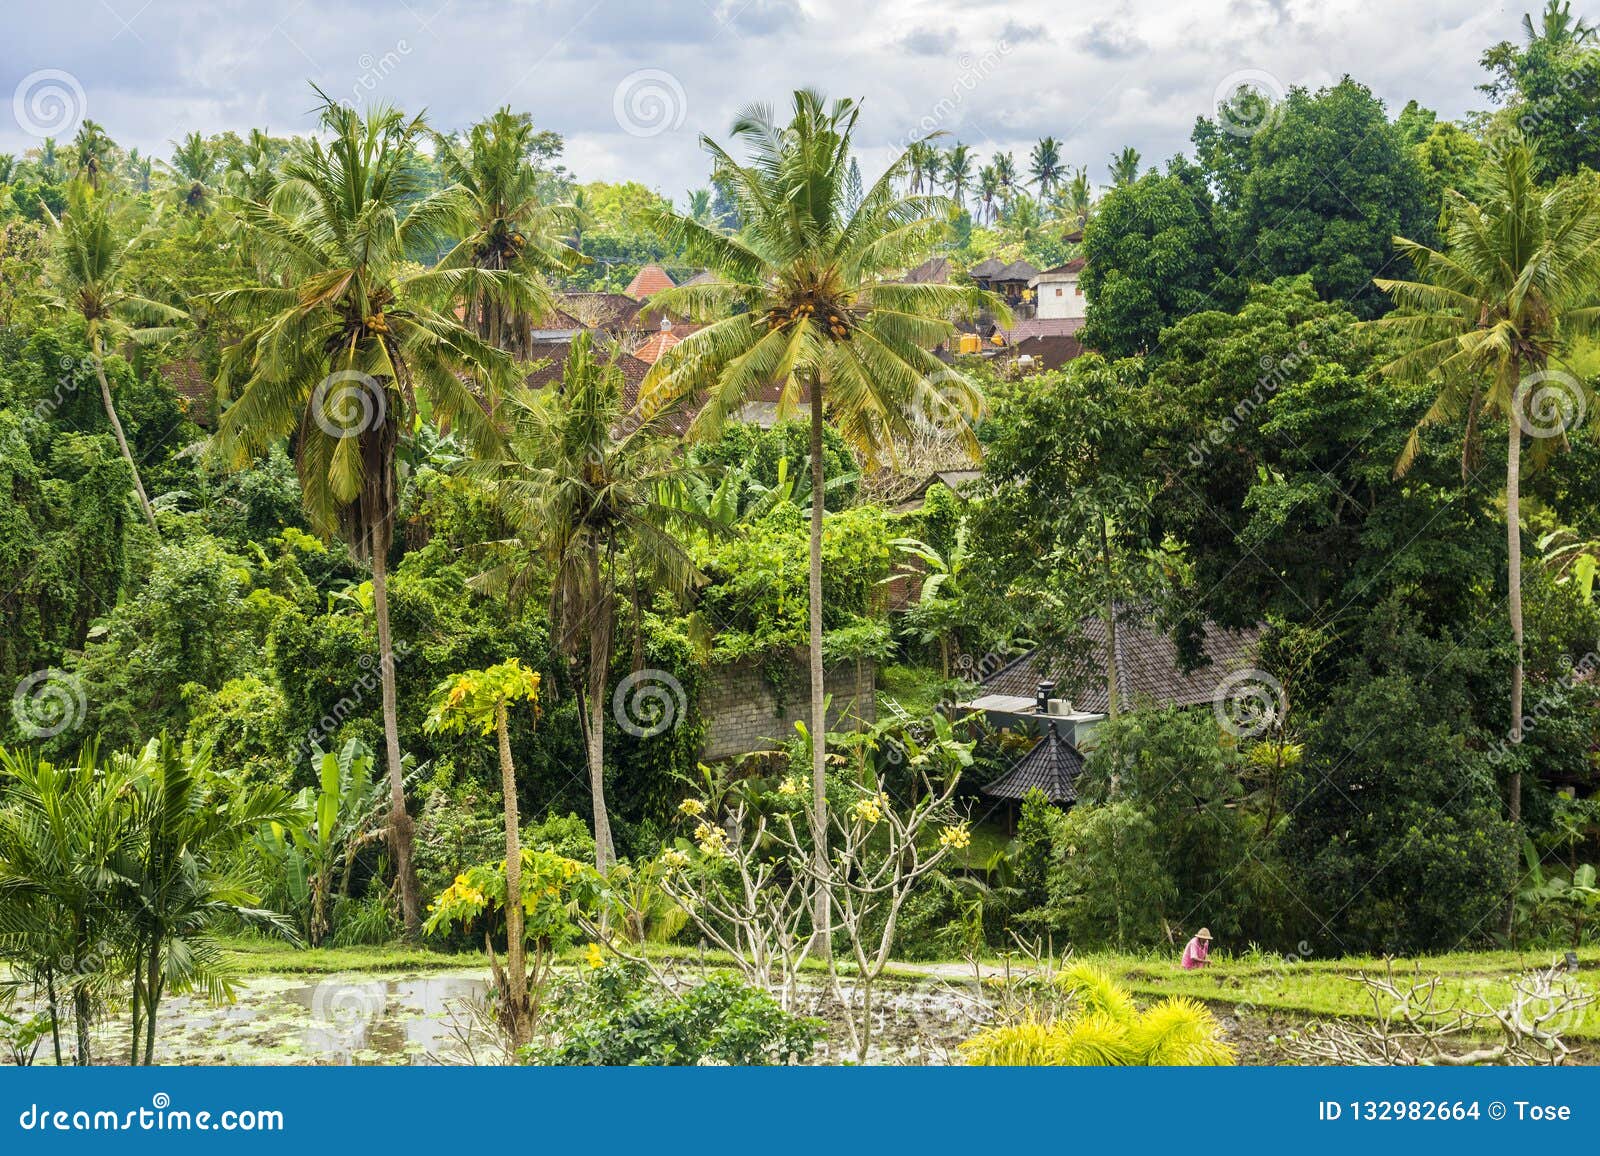 Campos, Casas Y Vegetación Del Arroz En Ciudad Ubud, Bali, Indonesia Foto de archivo - Imagen de tropical, hierba: 132982664